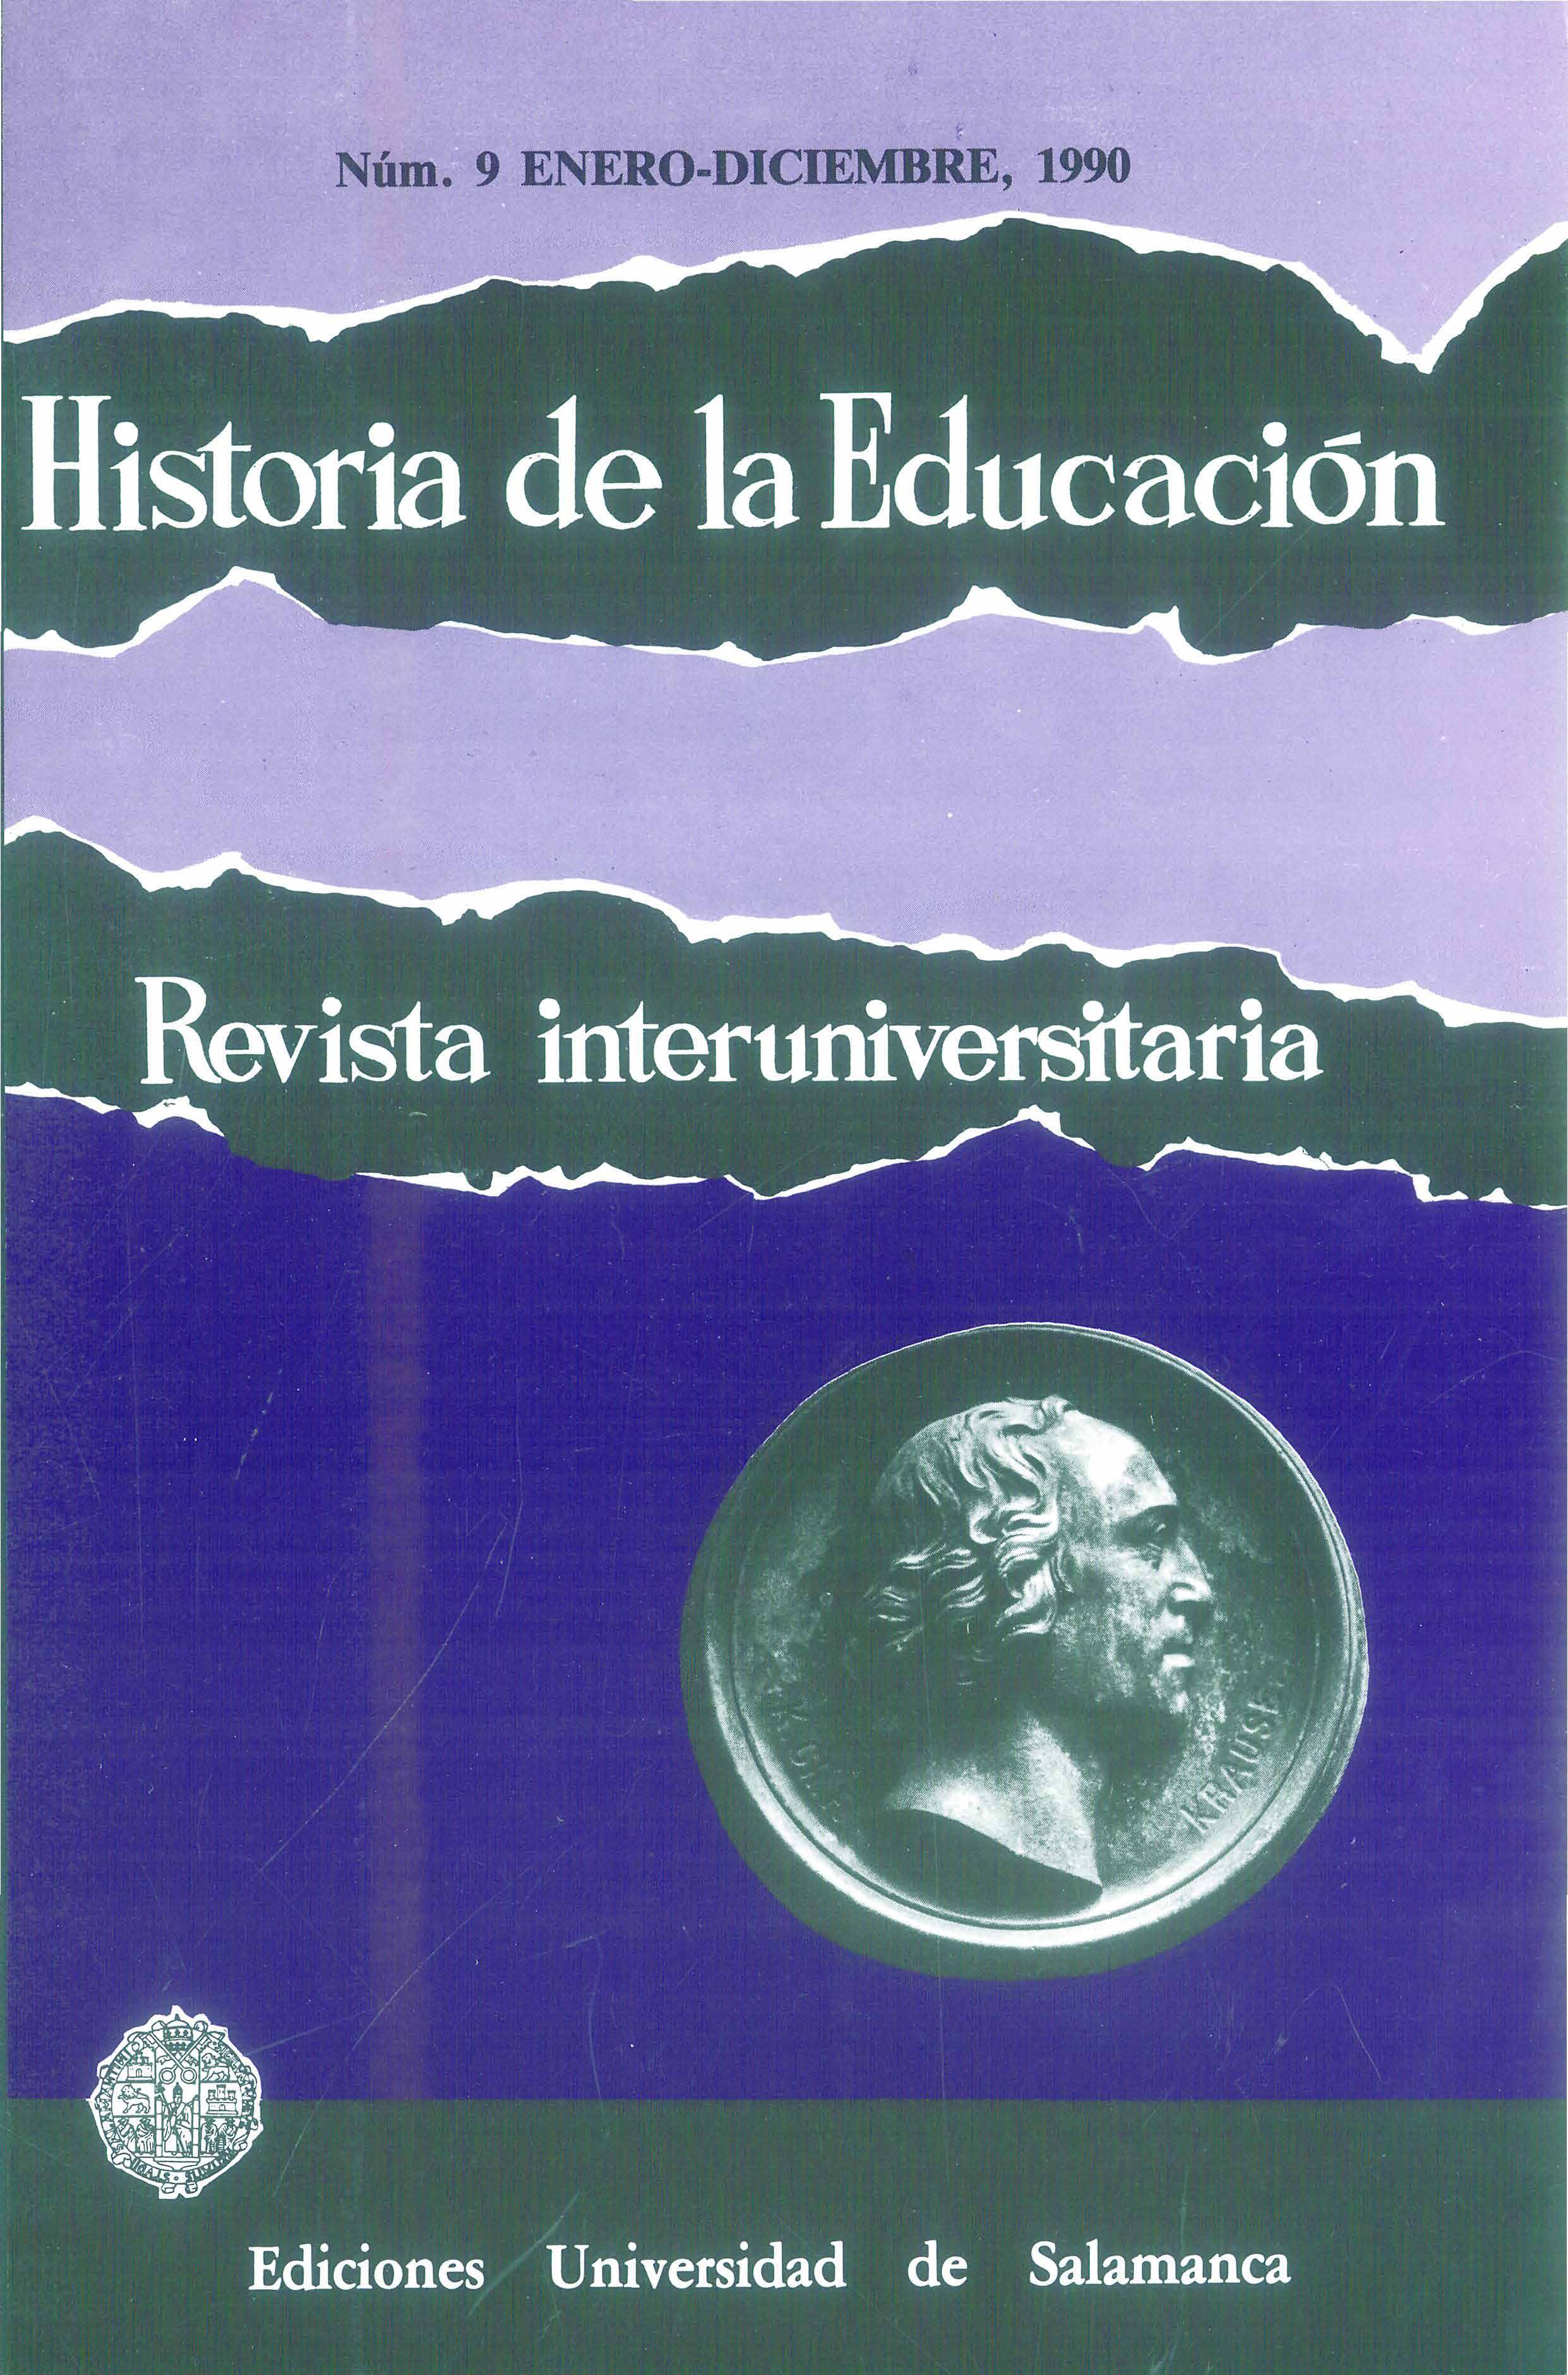                         Ver Vol. 9 (1990): Masonería y educación en la historia
                    